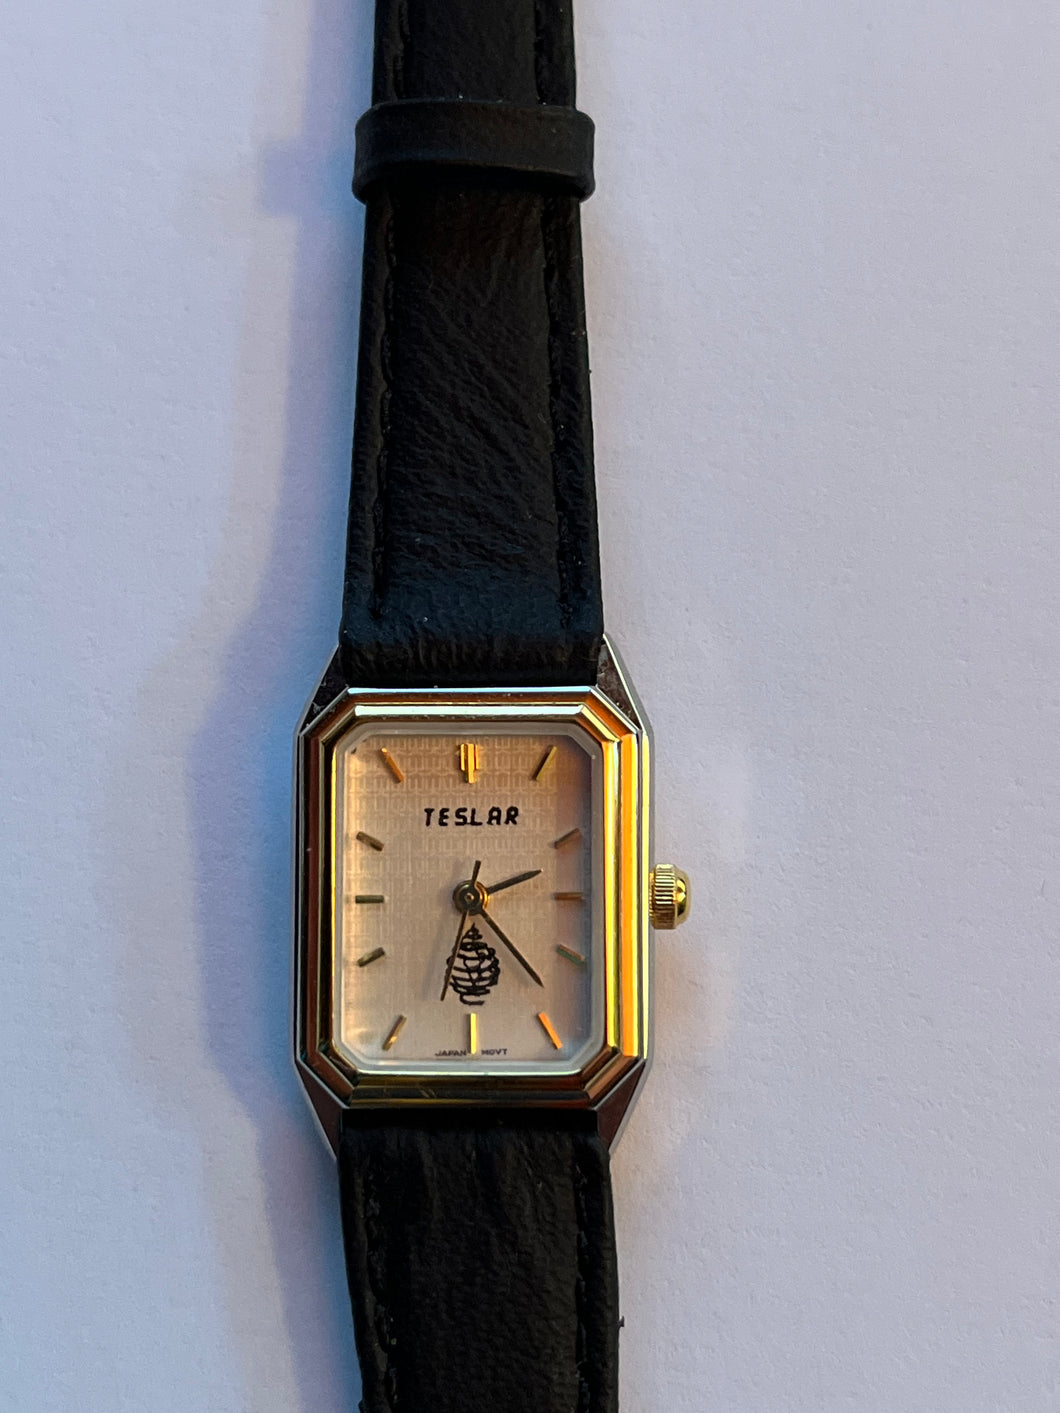 Original amerikanische TESLAR-Uhr - Schutz gegen Elektrosmog - Damenuhr